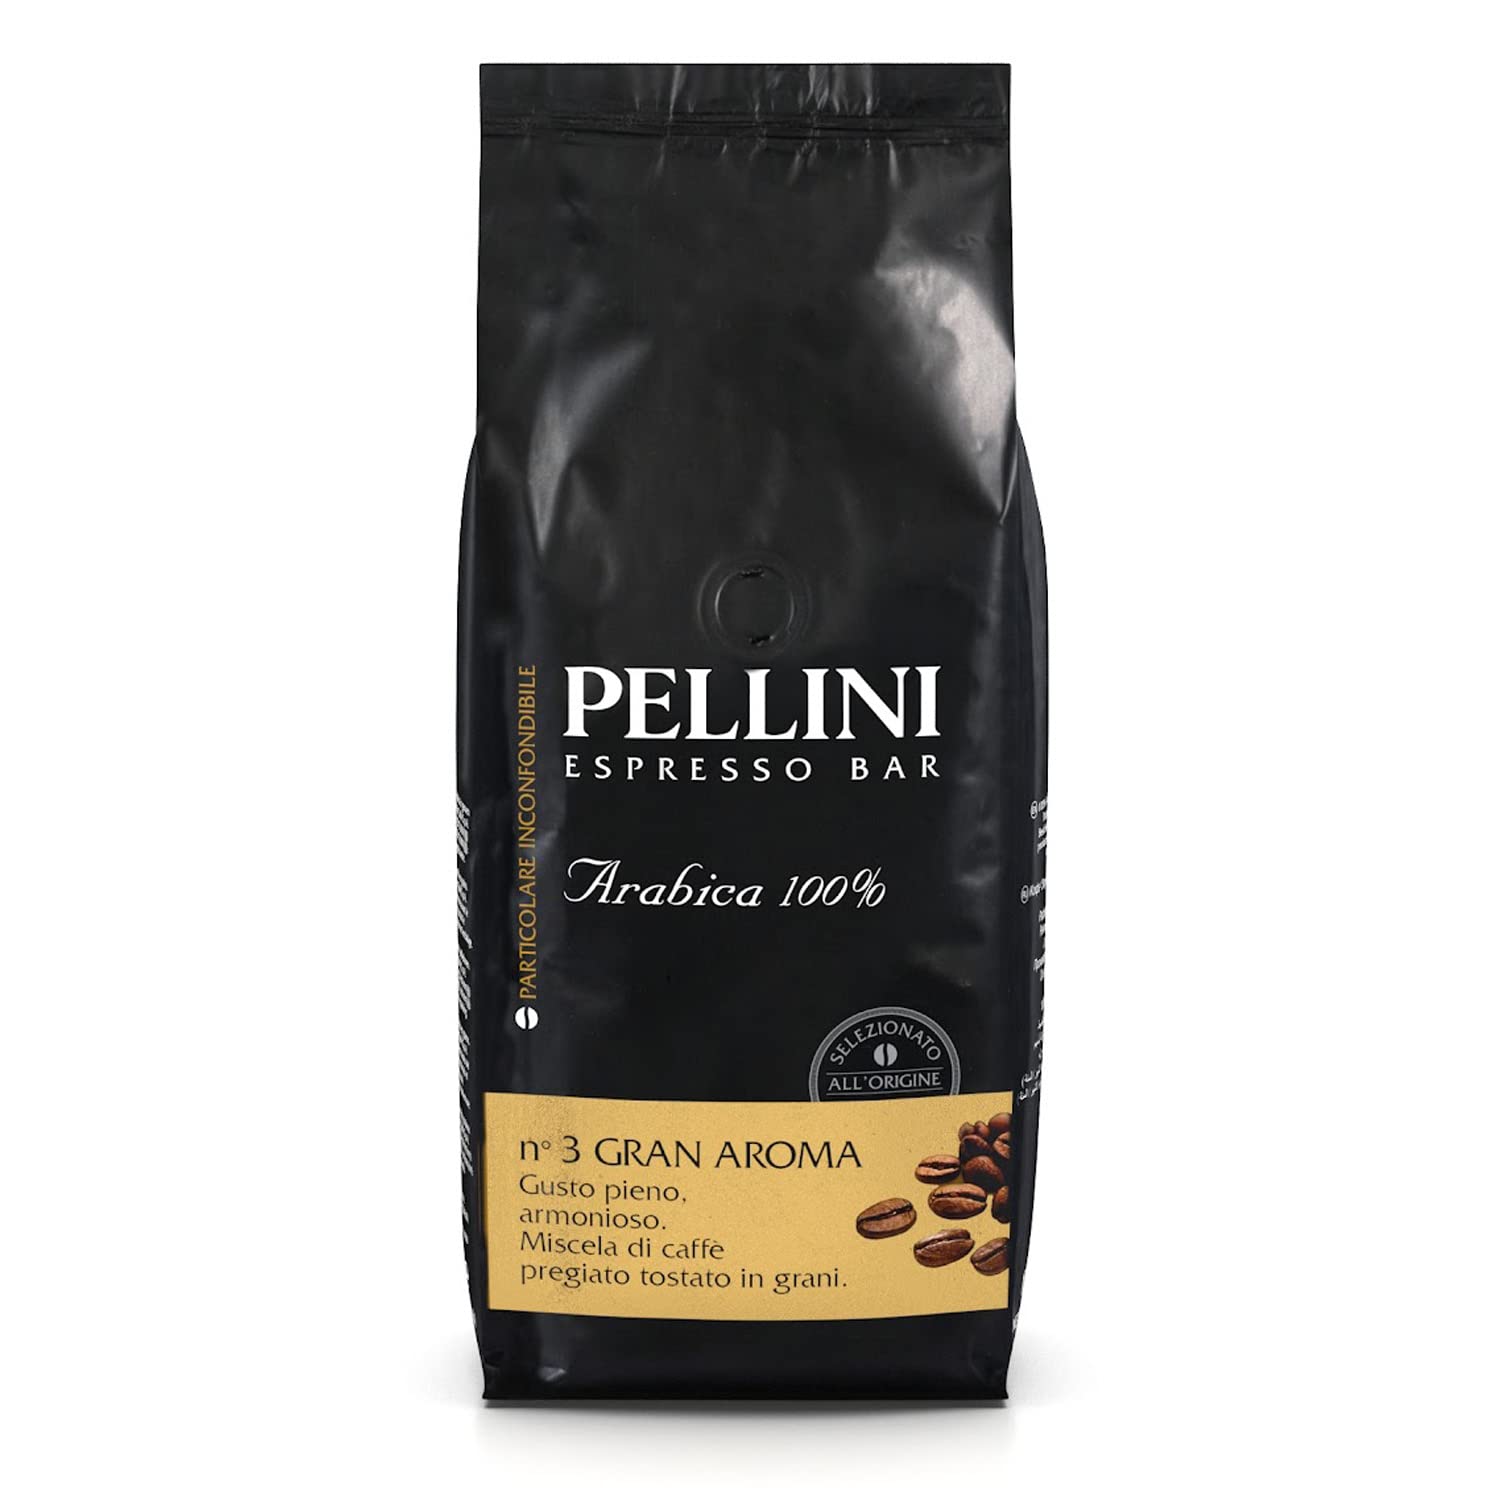 Pellini Espresso Gusto Bar No. 3 grains of aroma beans 1 kg